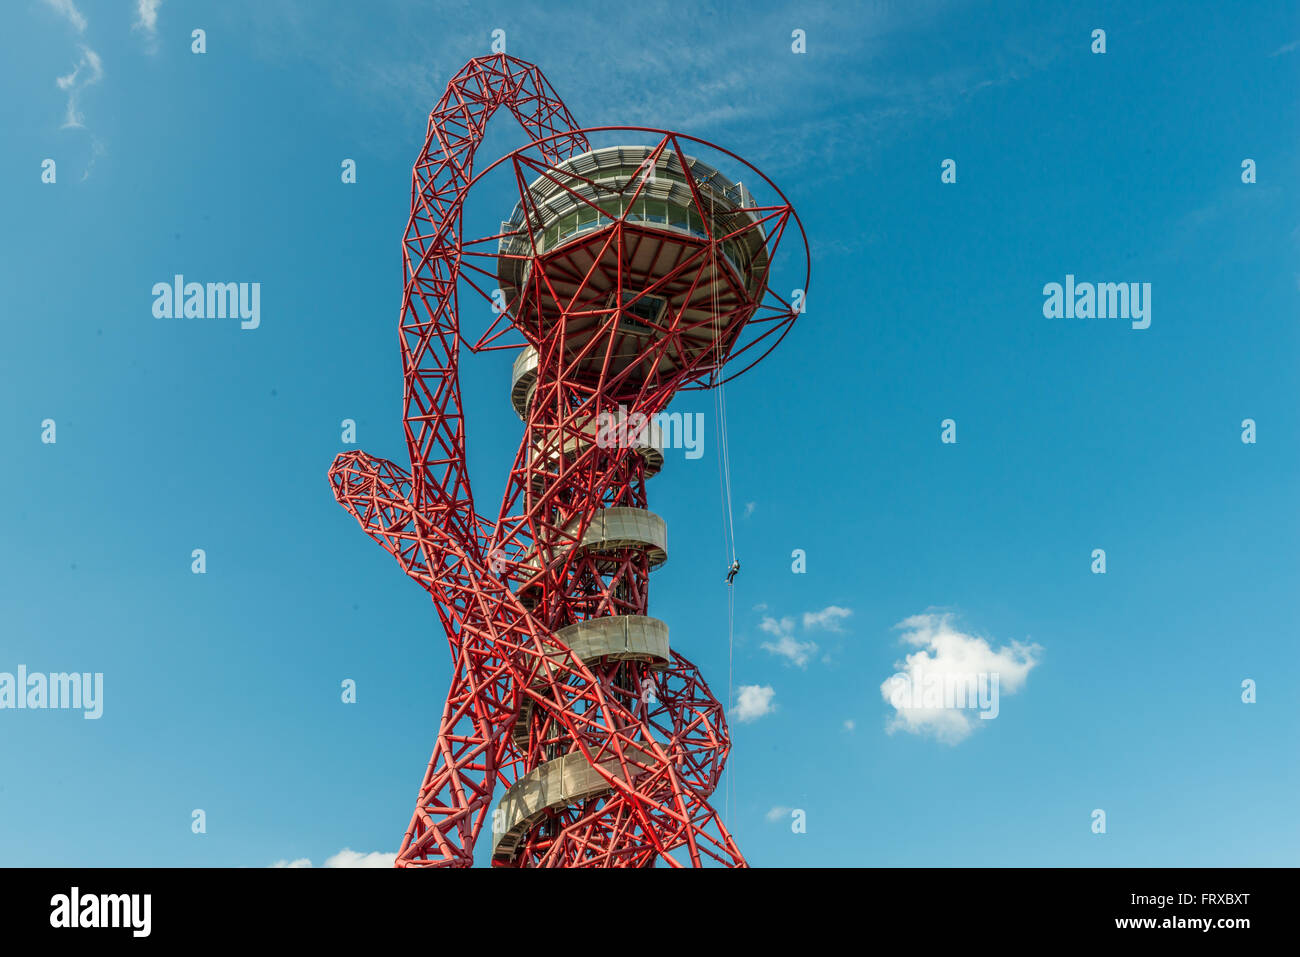 Londres, Royaume-Uni - 22 août, 2015:la descente en rappel de l'expérience dans ArcelorMittal Orbit, Queen Elizabeth Olympic Park. Banque D'Images